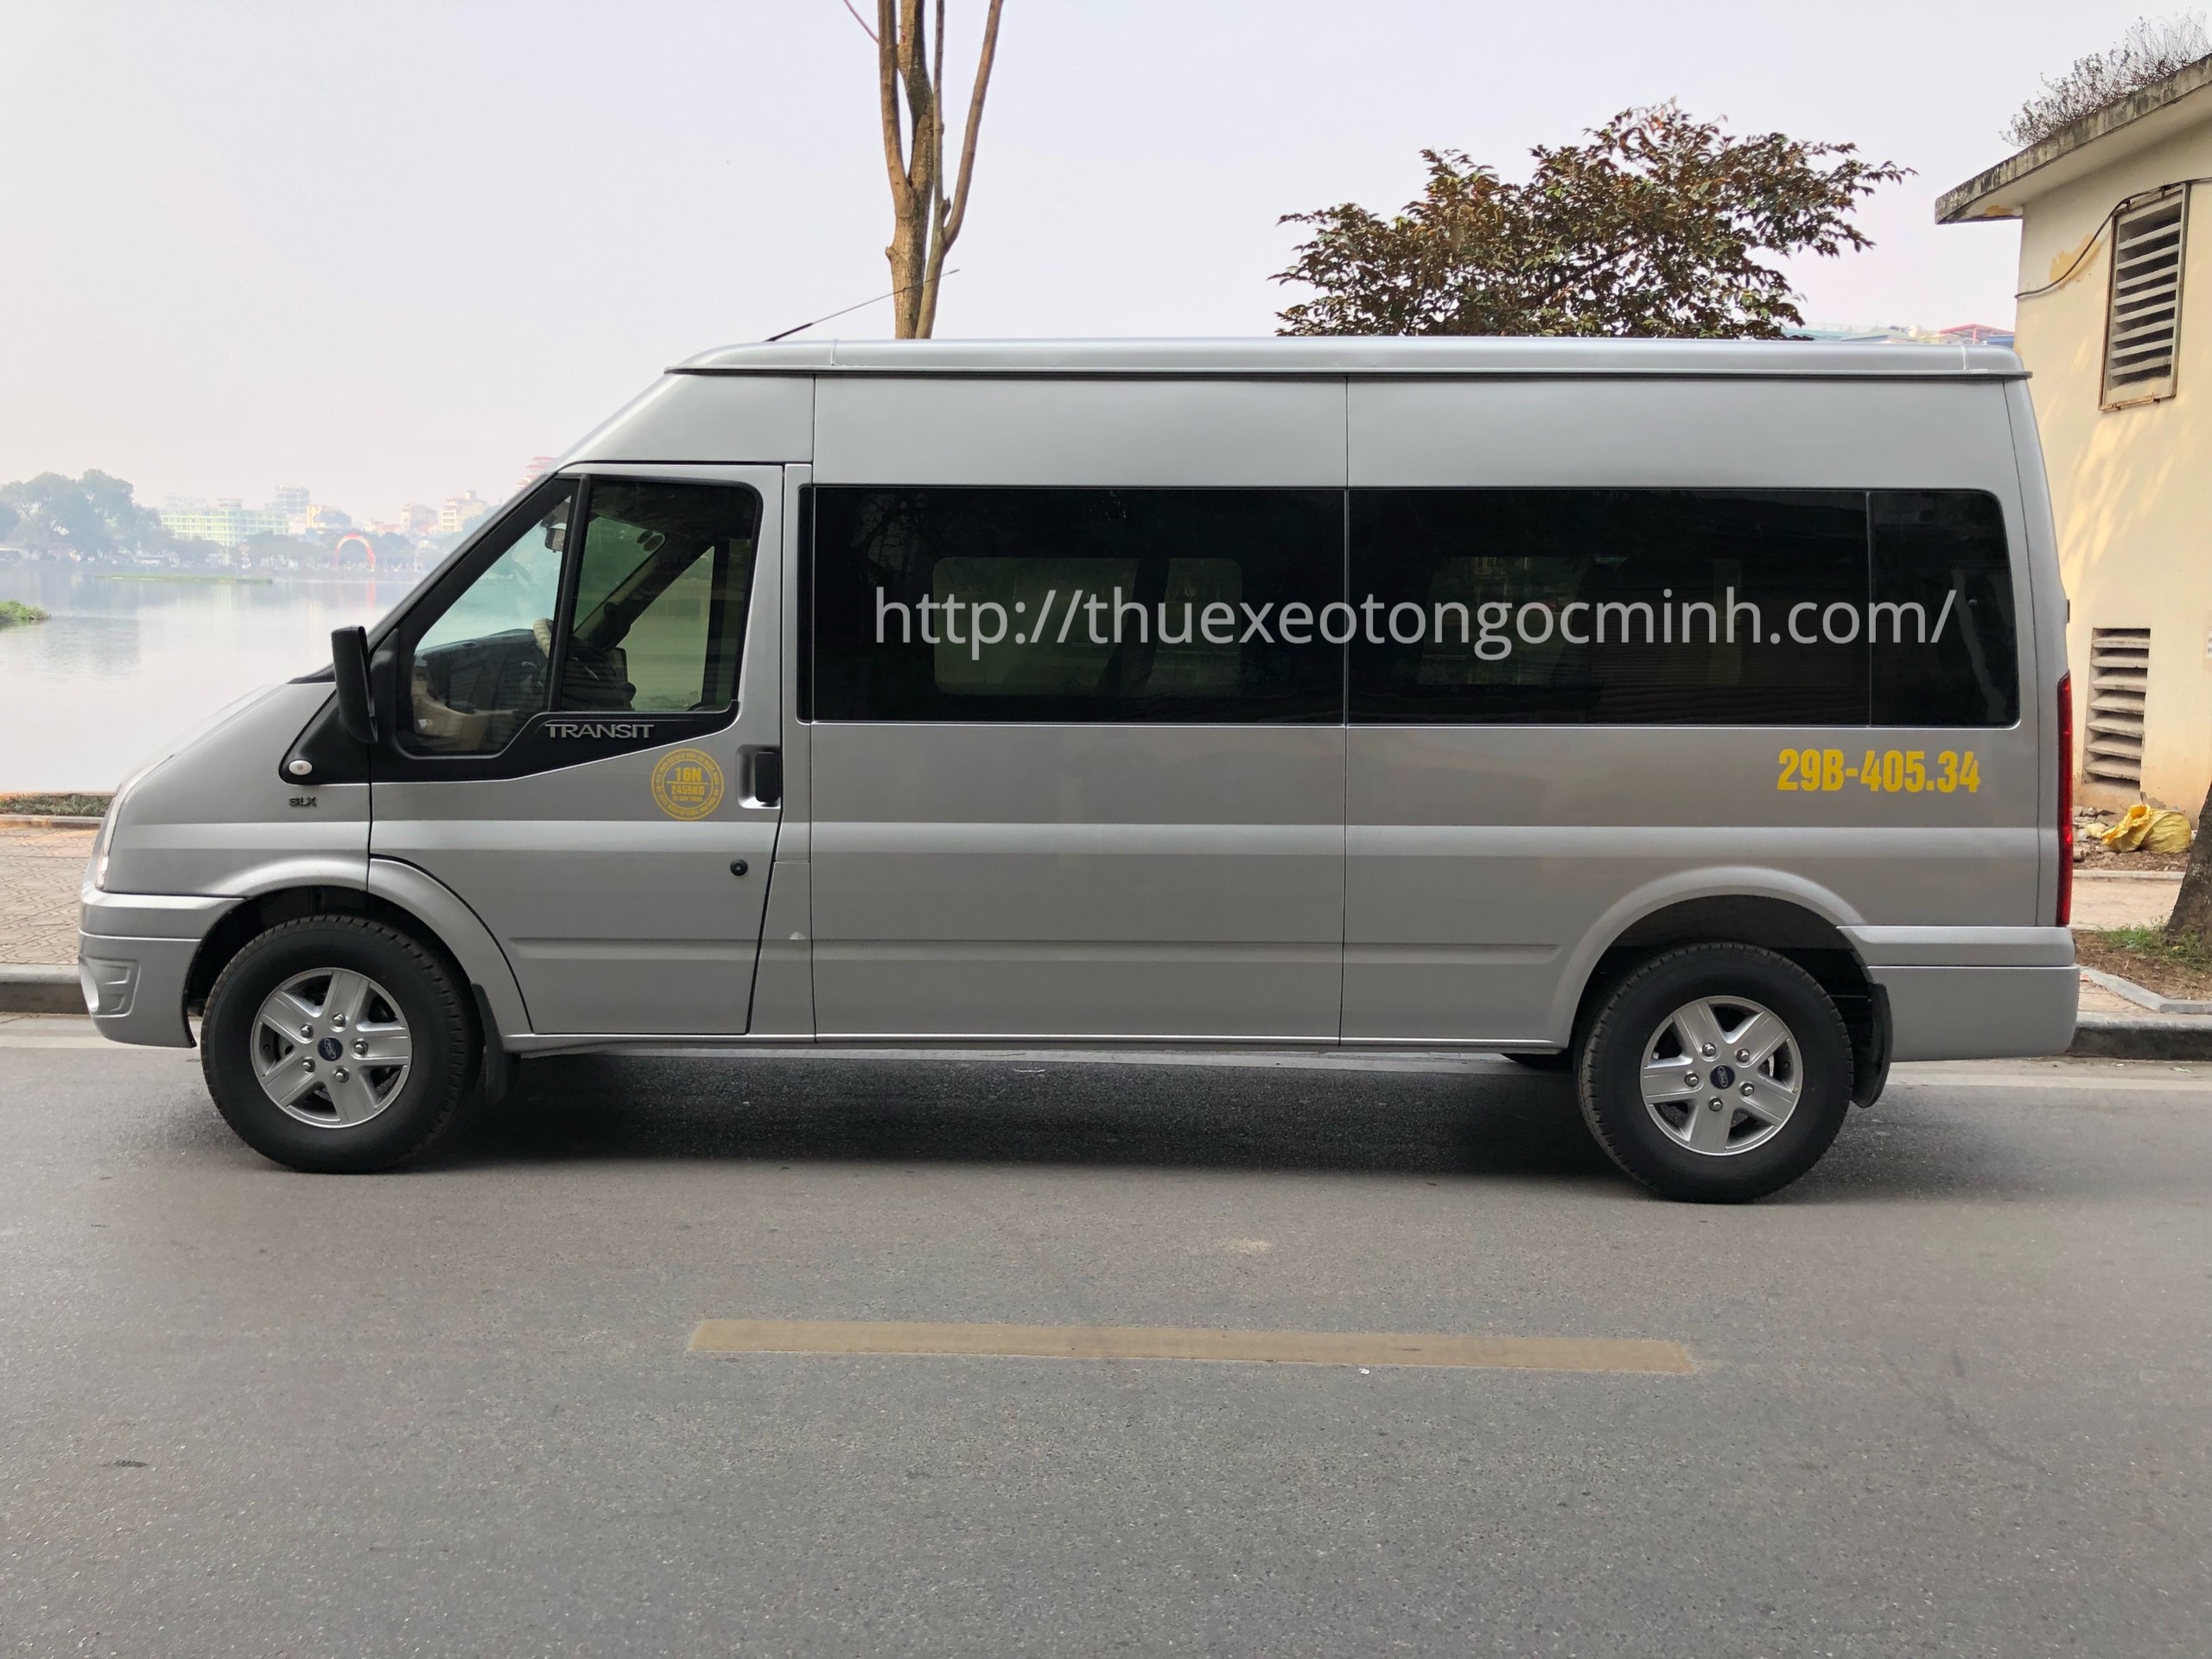 Thuê xe tháng 16 chỗ ford Transit tại Hà Nội